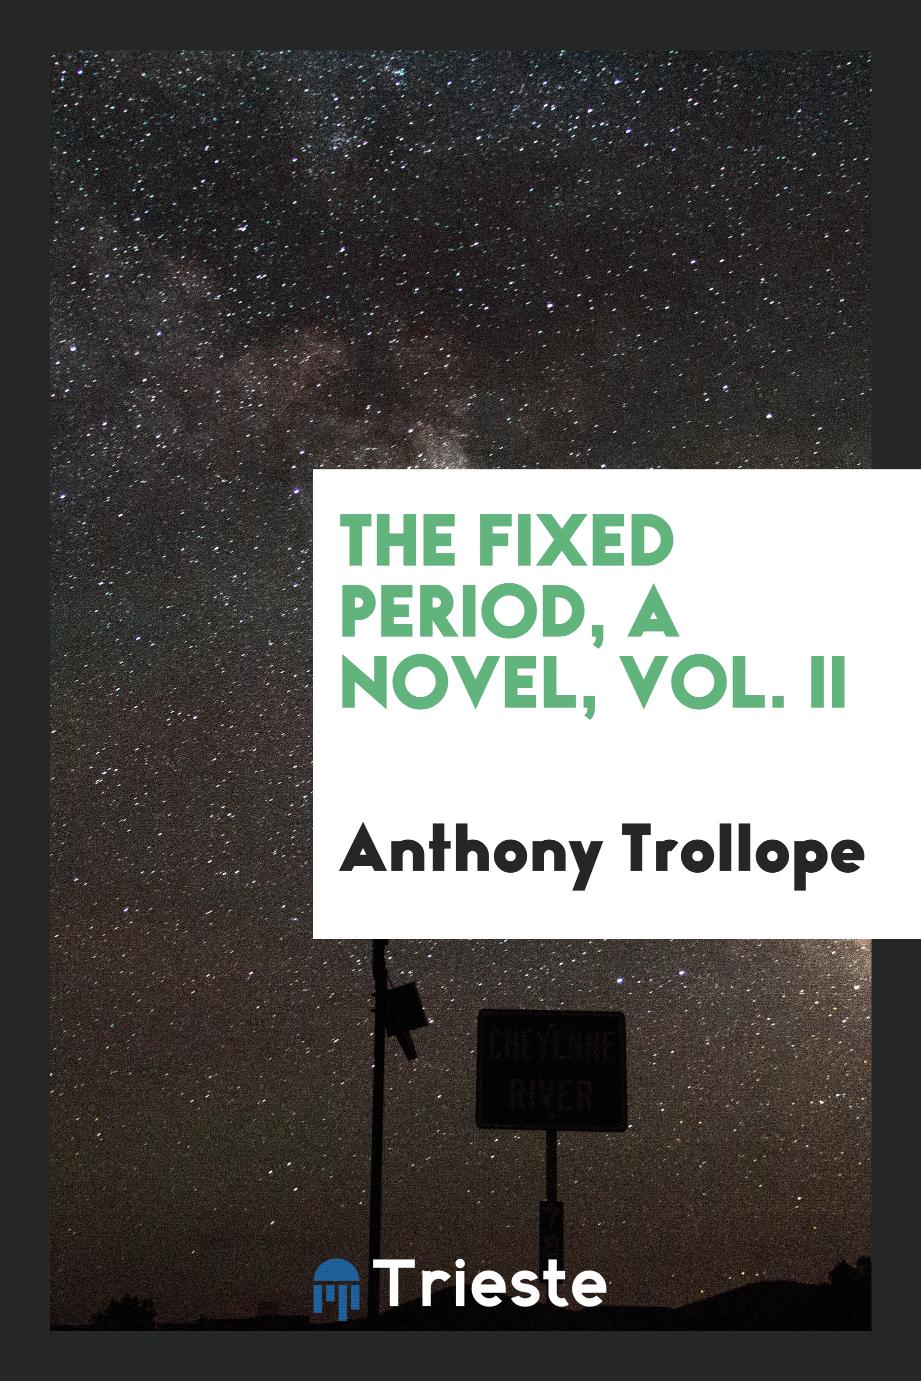 The fixed period, a novel, Vol. II